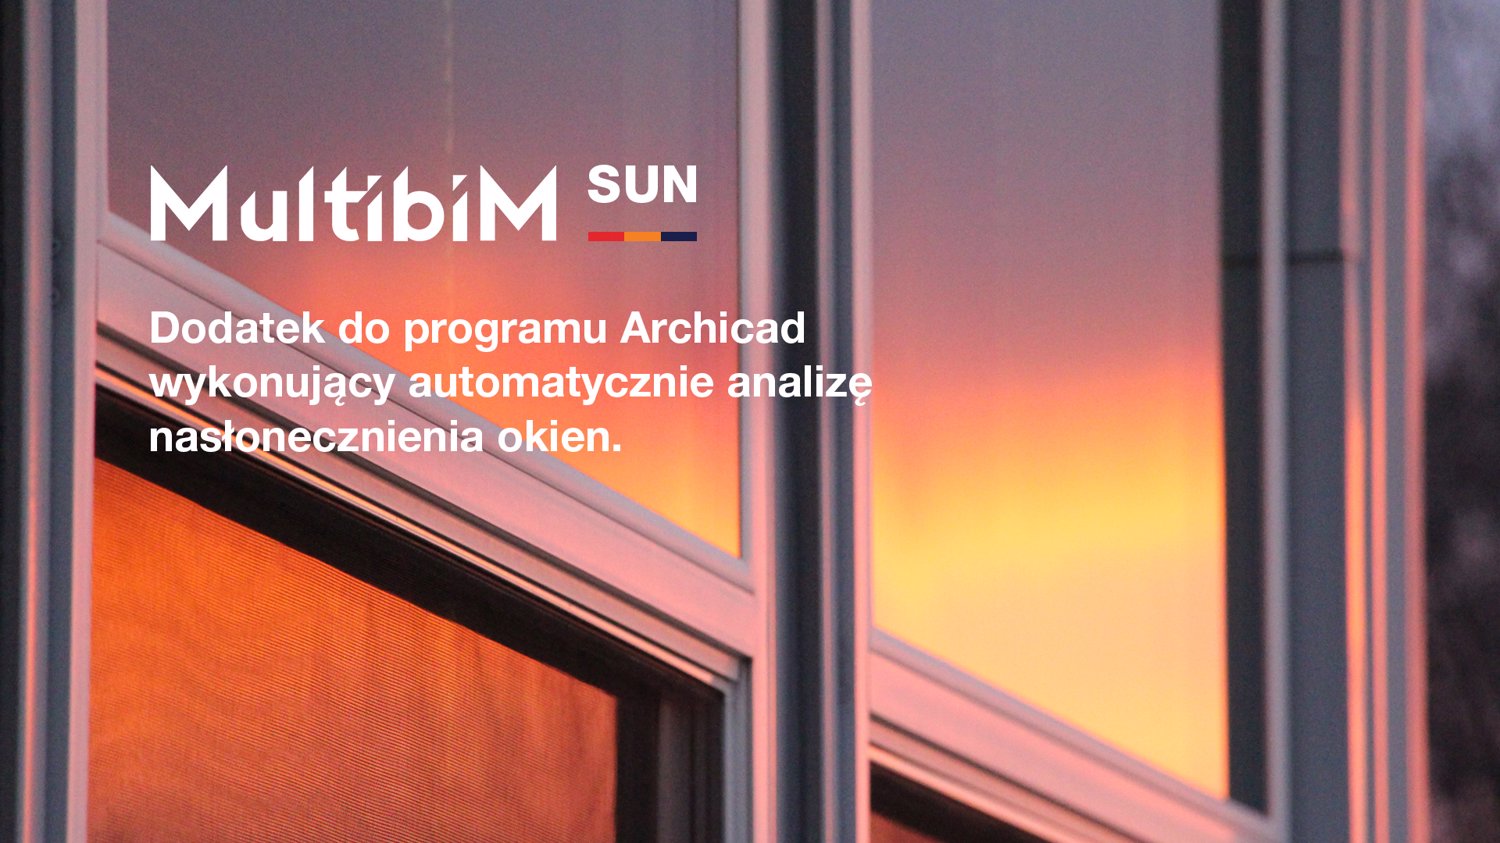 Multibim SUN - brakujące ogniwo zautomatyzowanej analizy nasłonecznienia.